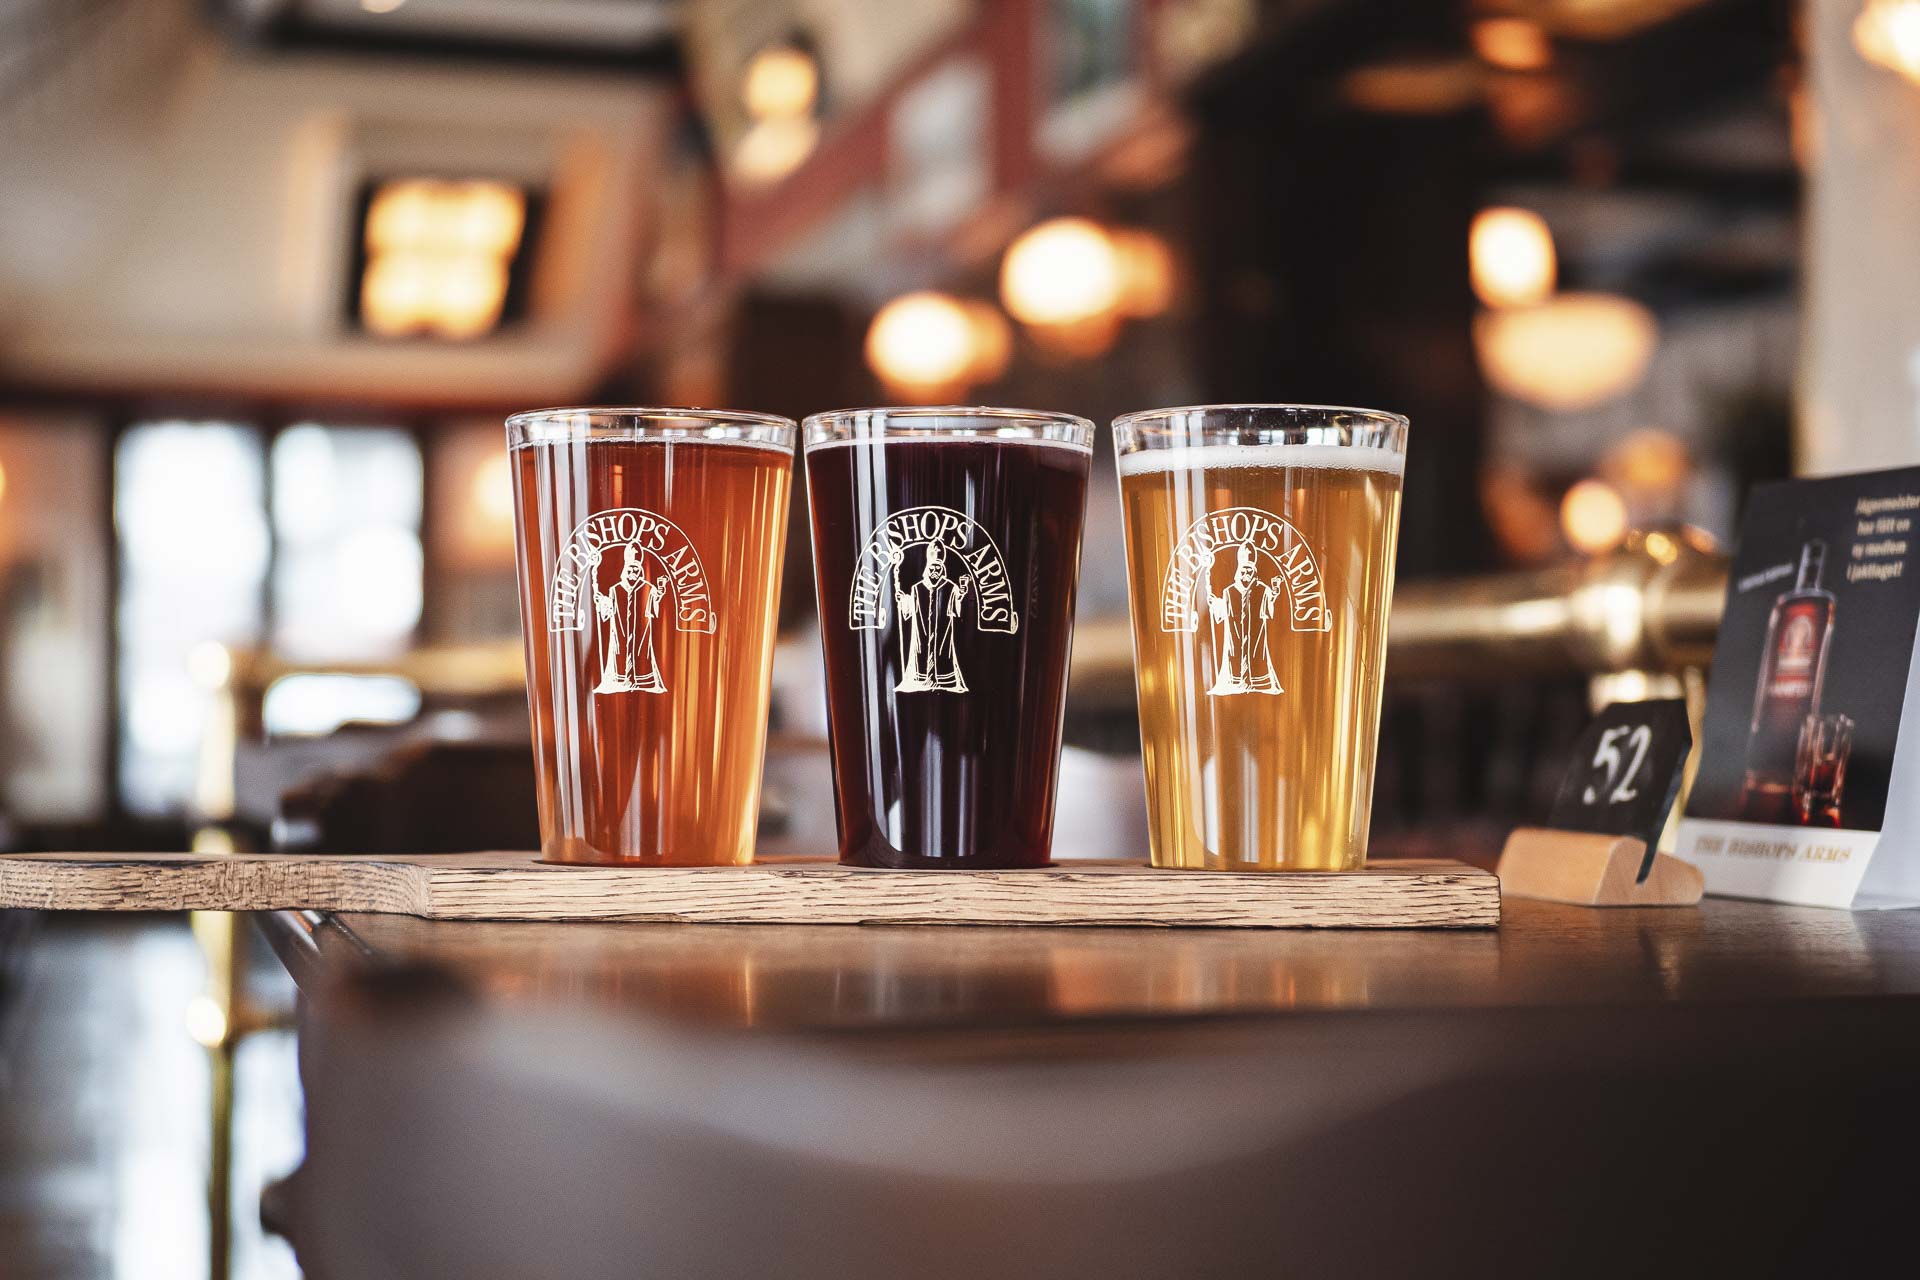 The Bishops Arms satsar på ny sajt för att lyfta svensk öl- och matkultur